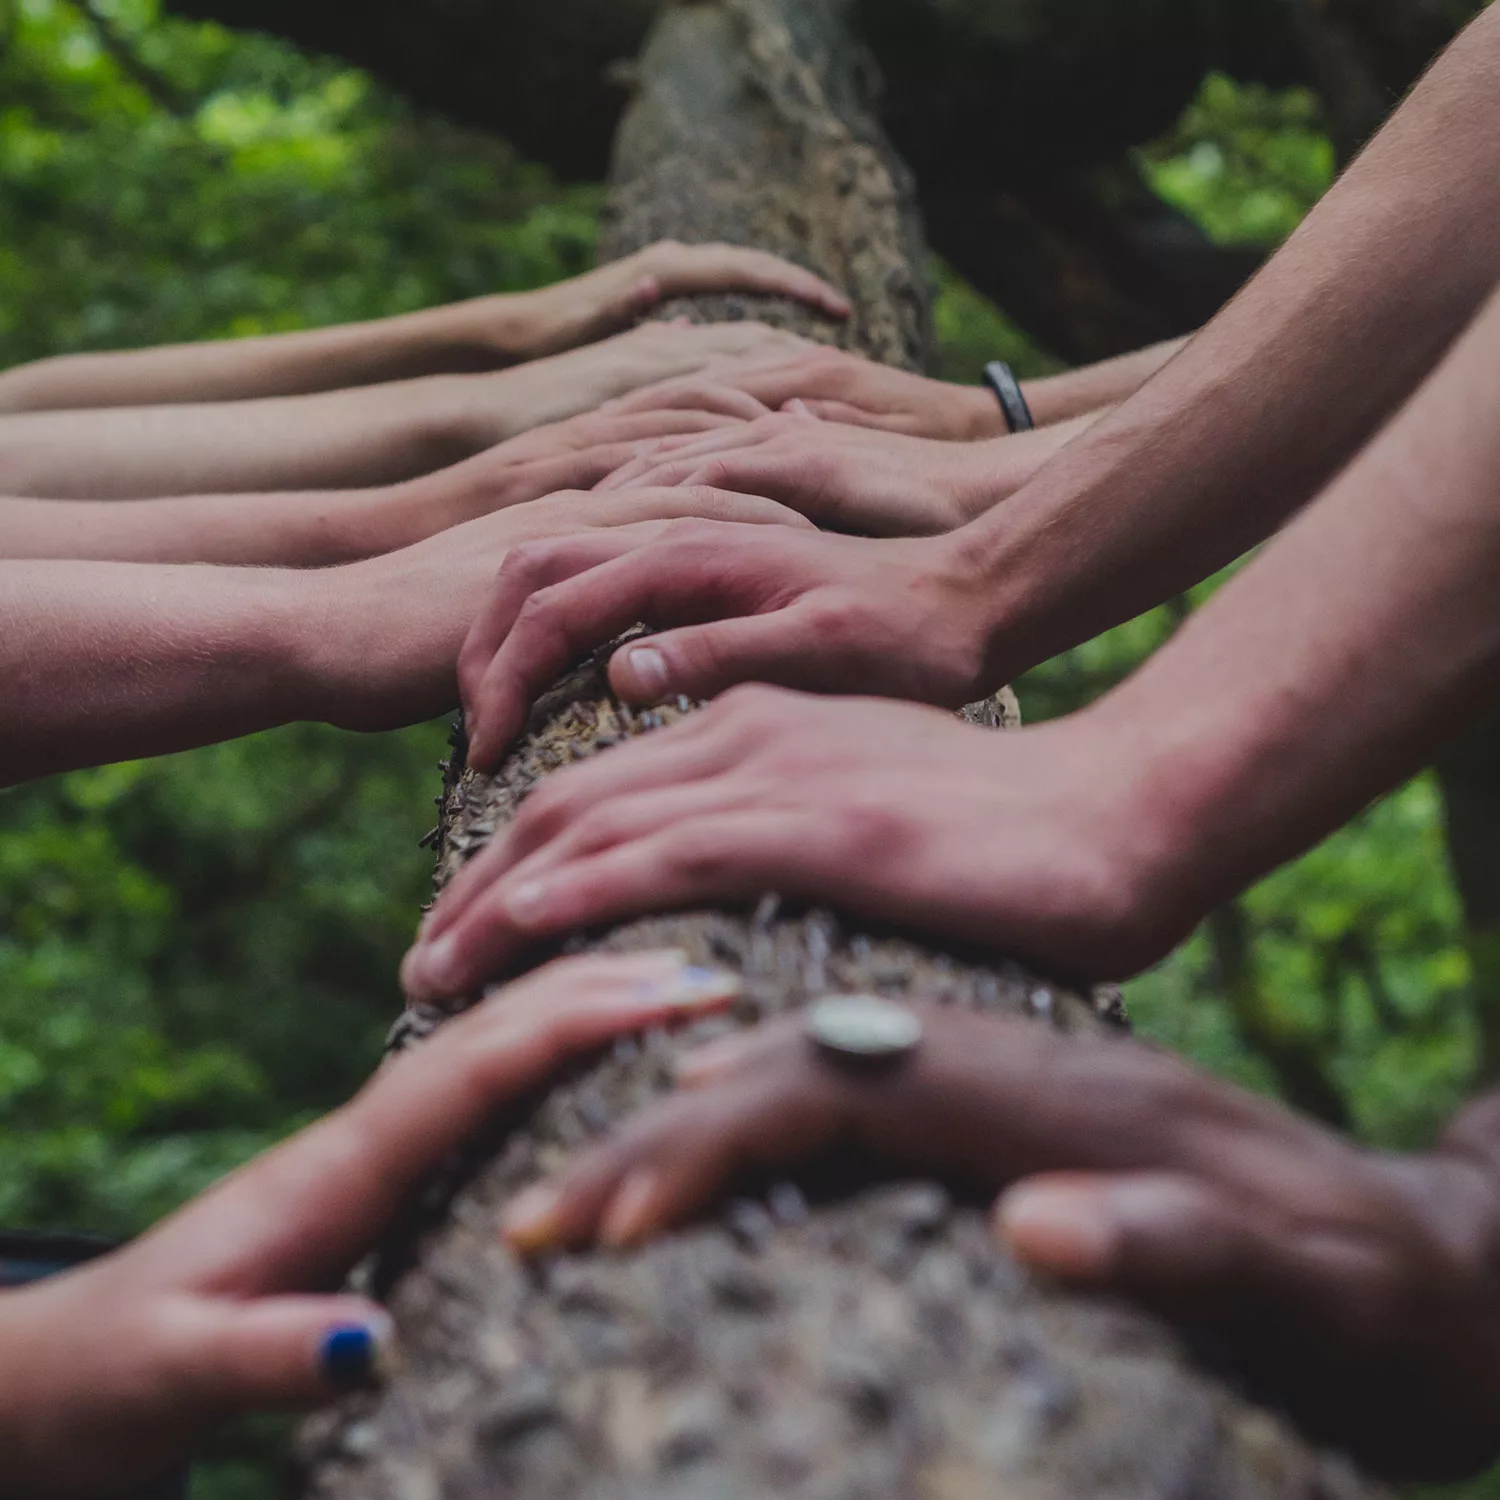 photographie de plusieurs mains appuyées sur un tronc d'arbre, illustre la deuxième étape de la méthode innovante du bilan d'Oser Demain